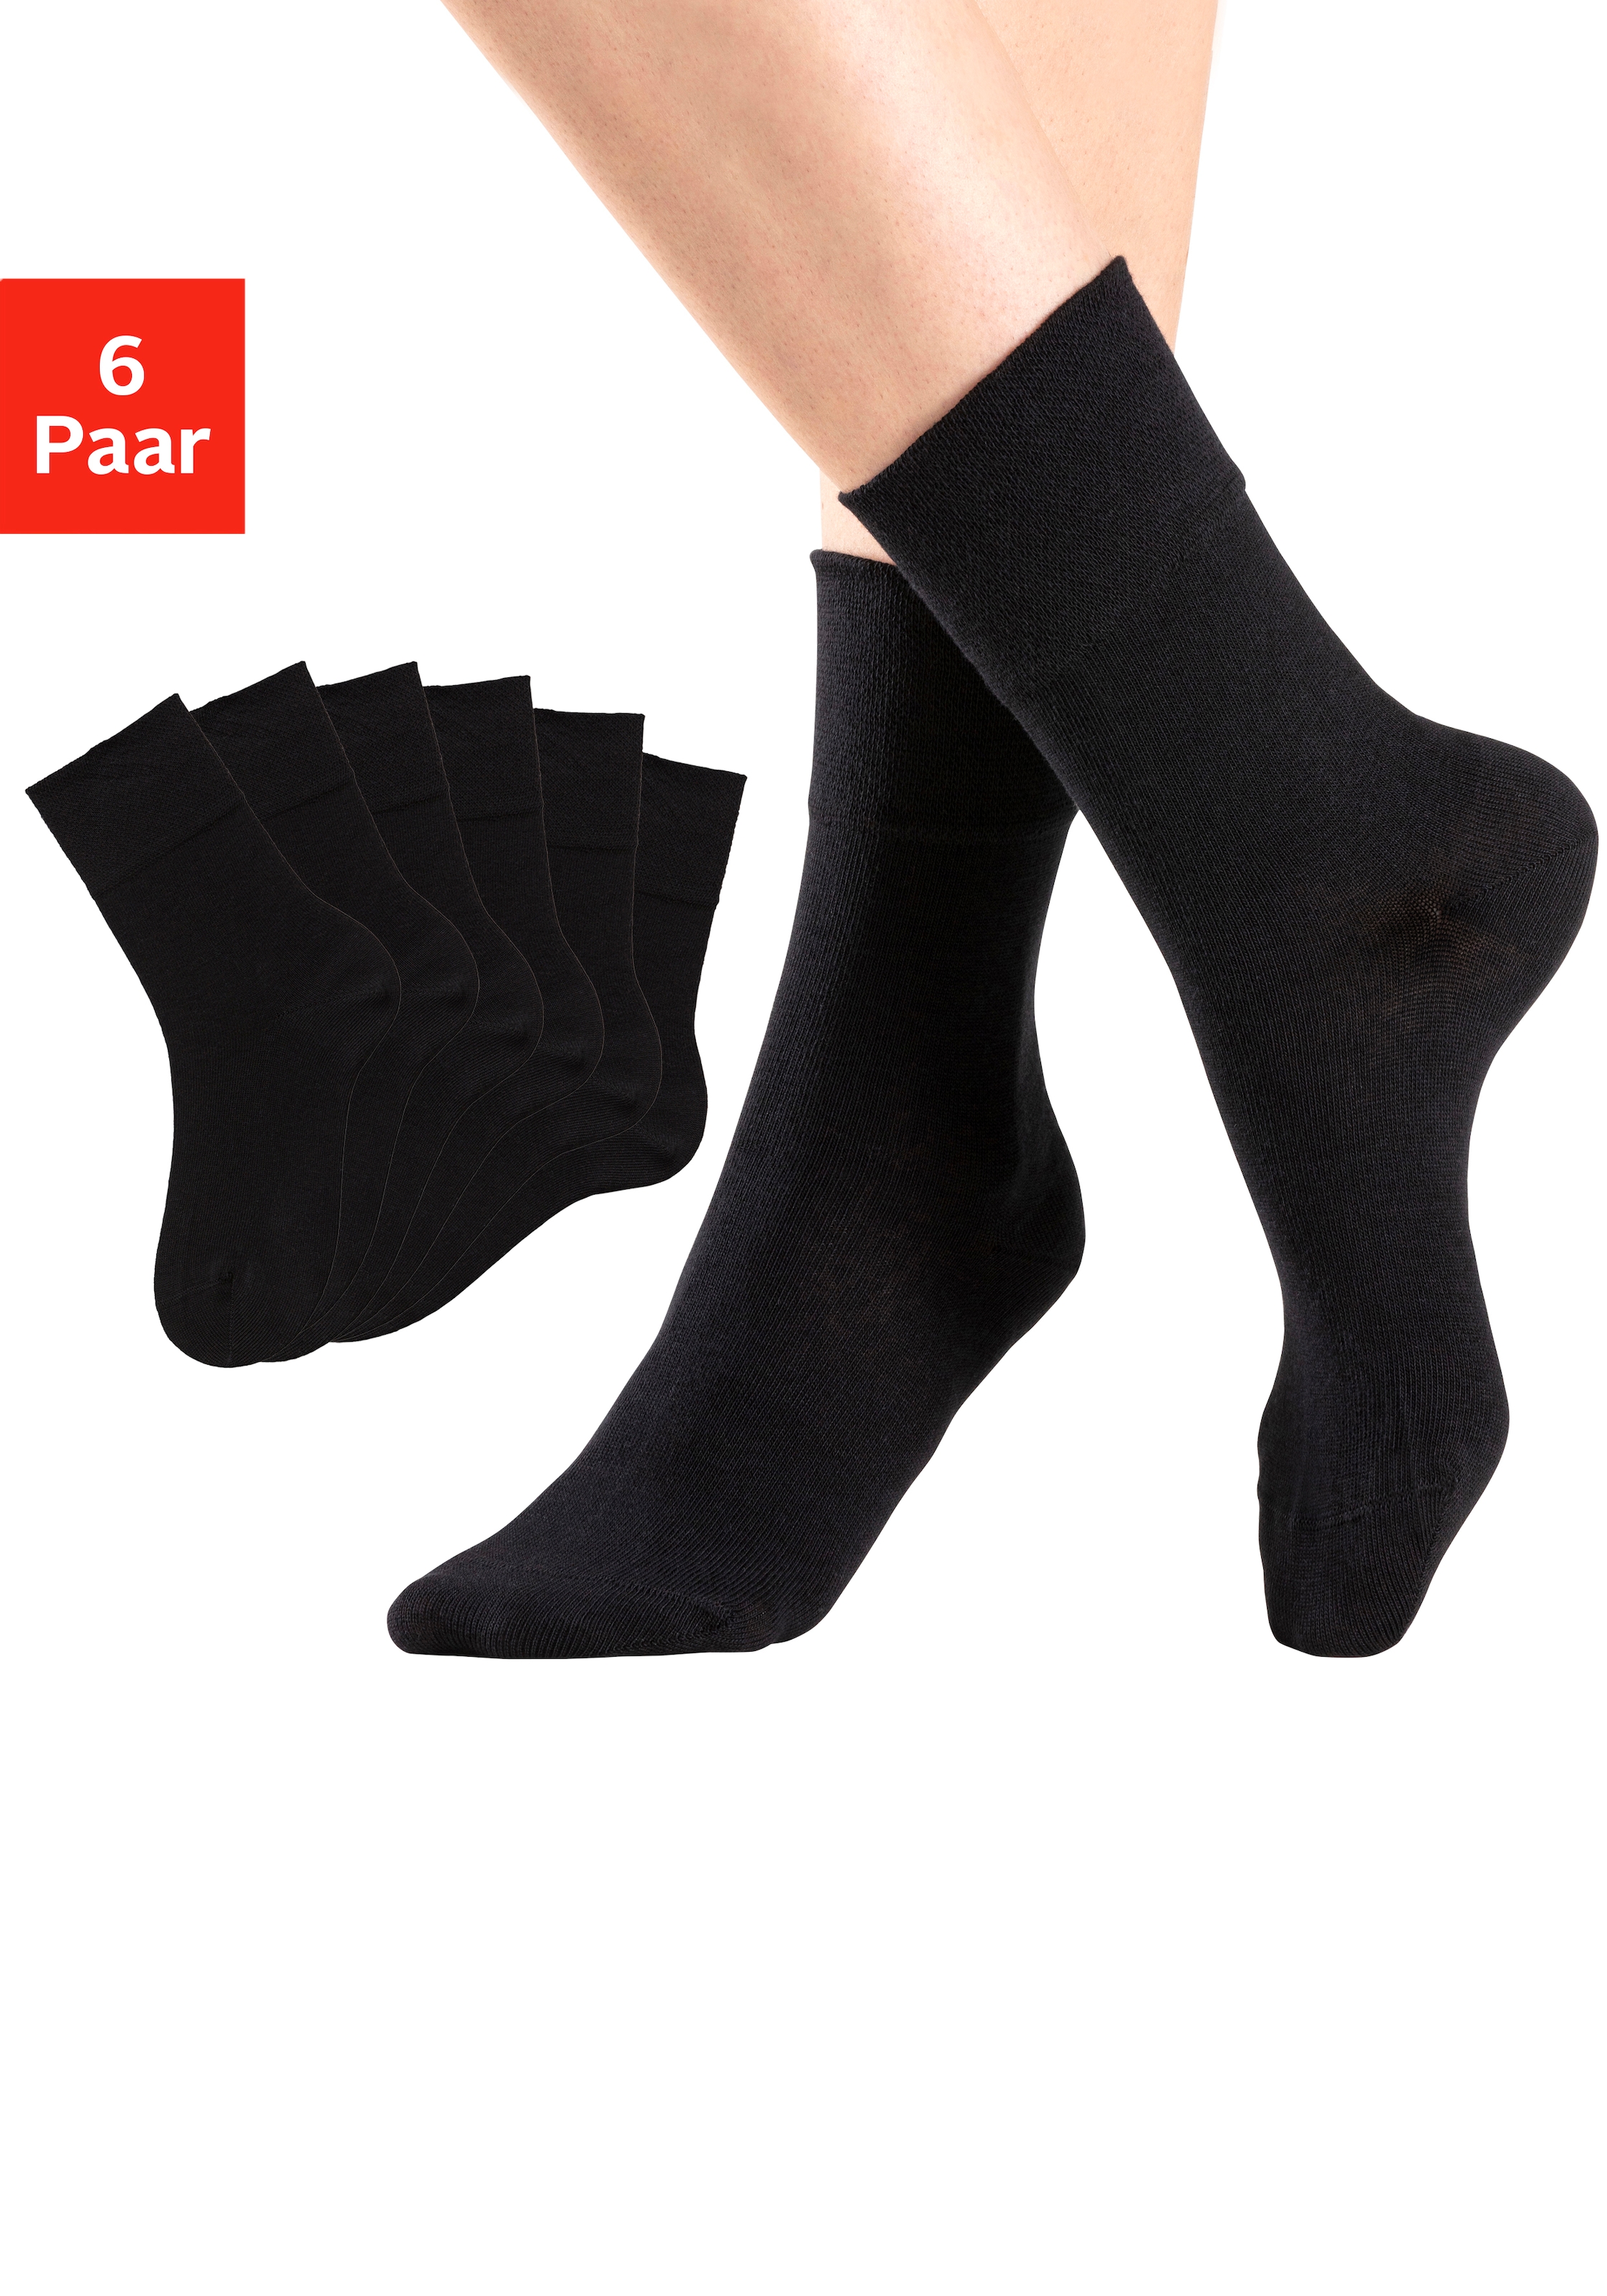 Socken, (Packung, 6 Paar), mit Komfortbund auch für Diabetiker geeignet